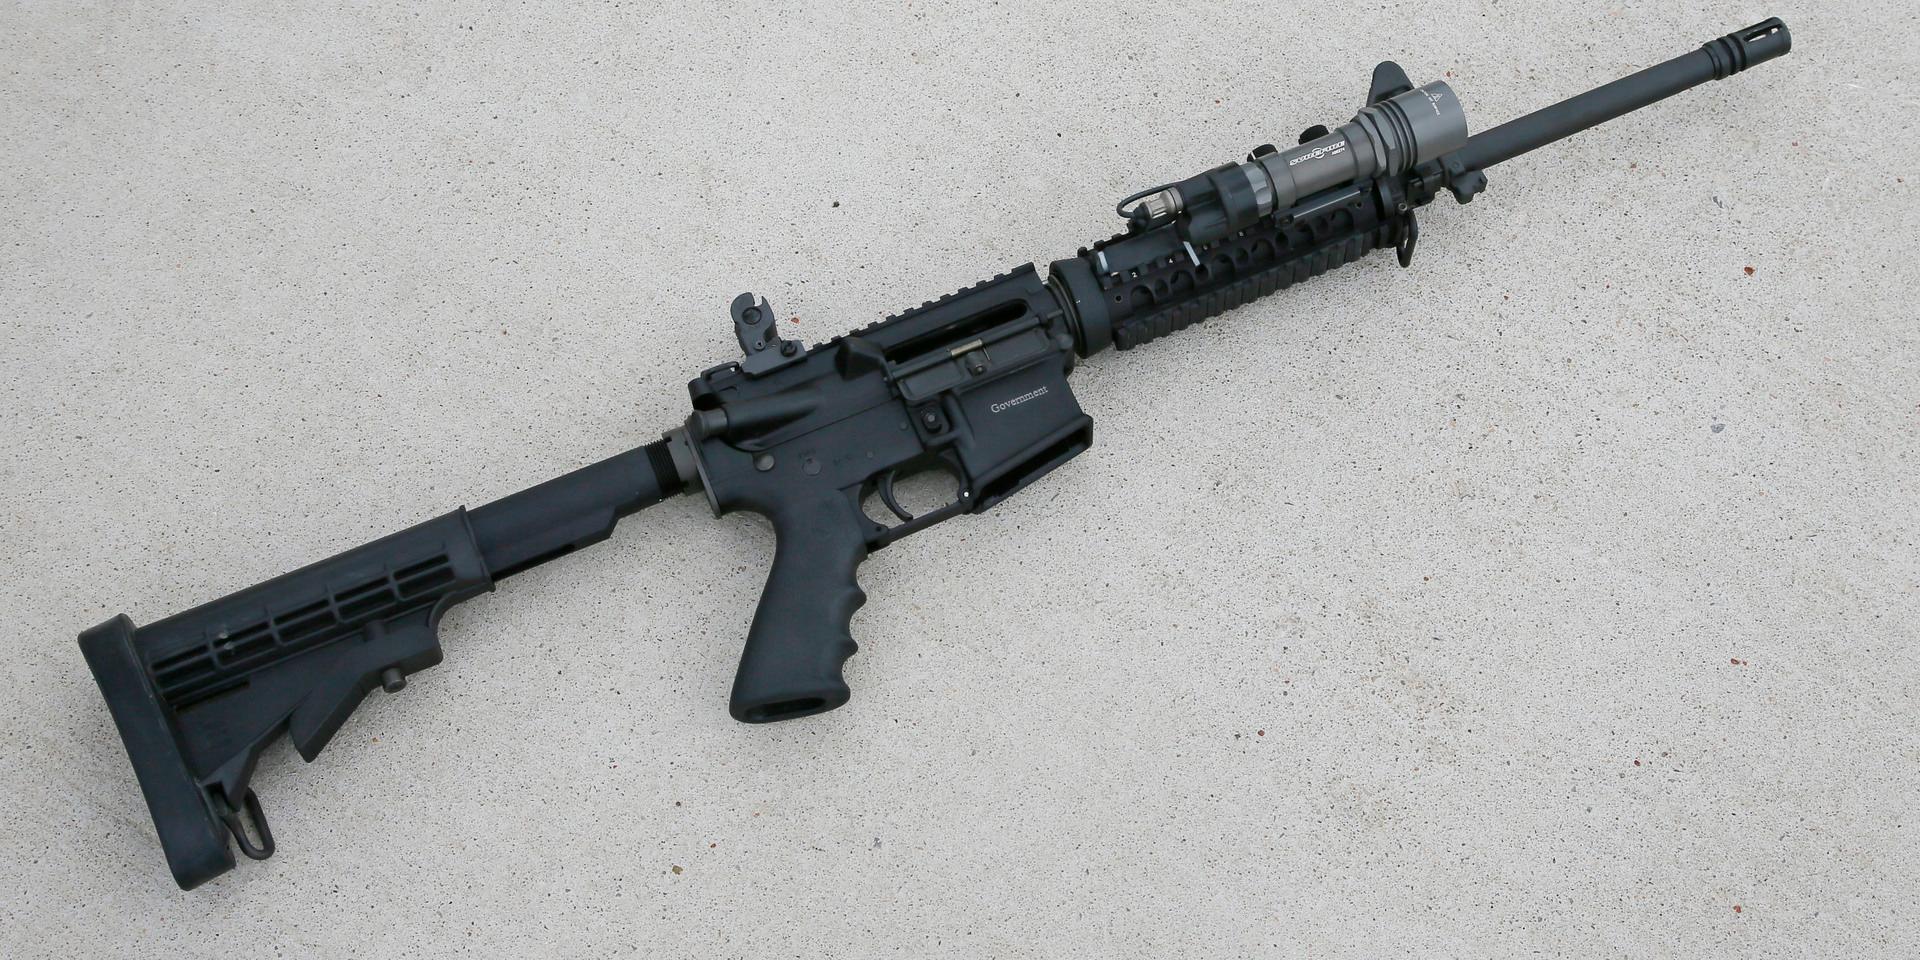 Mannen använde sig av ett halvautomatiskt gevär av modellen AR-15 (bilden), som förekommit vid många tidigare skjutningar i USA. Arkivbild.